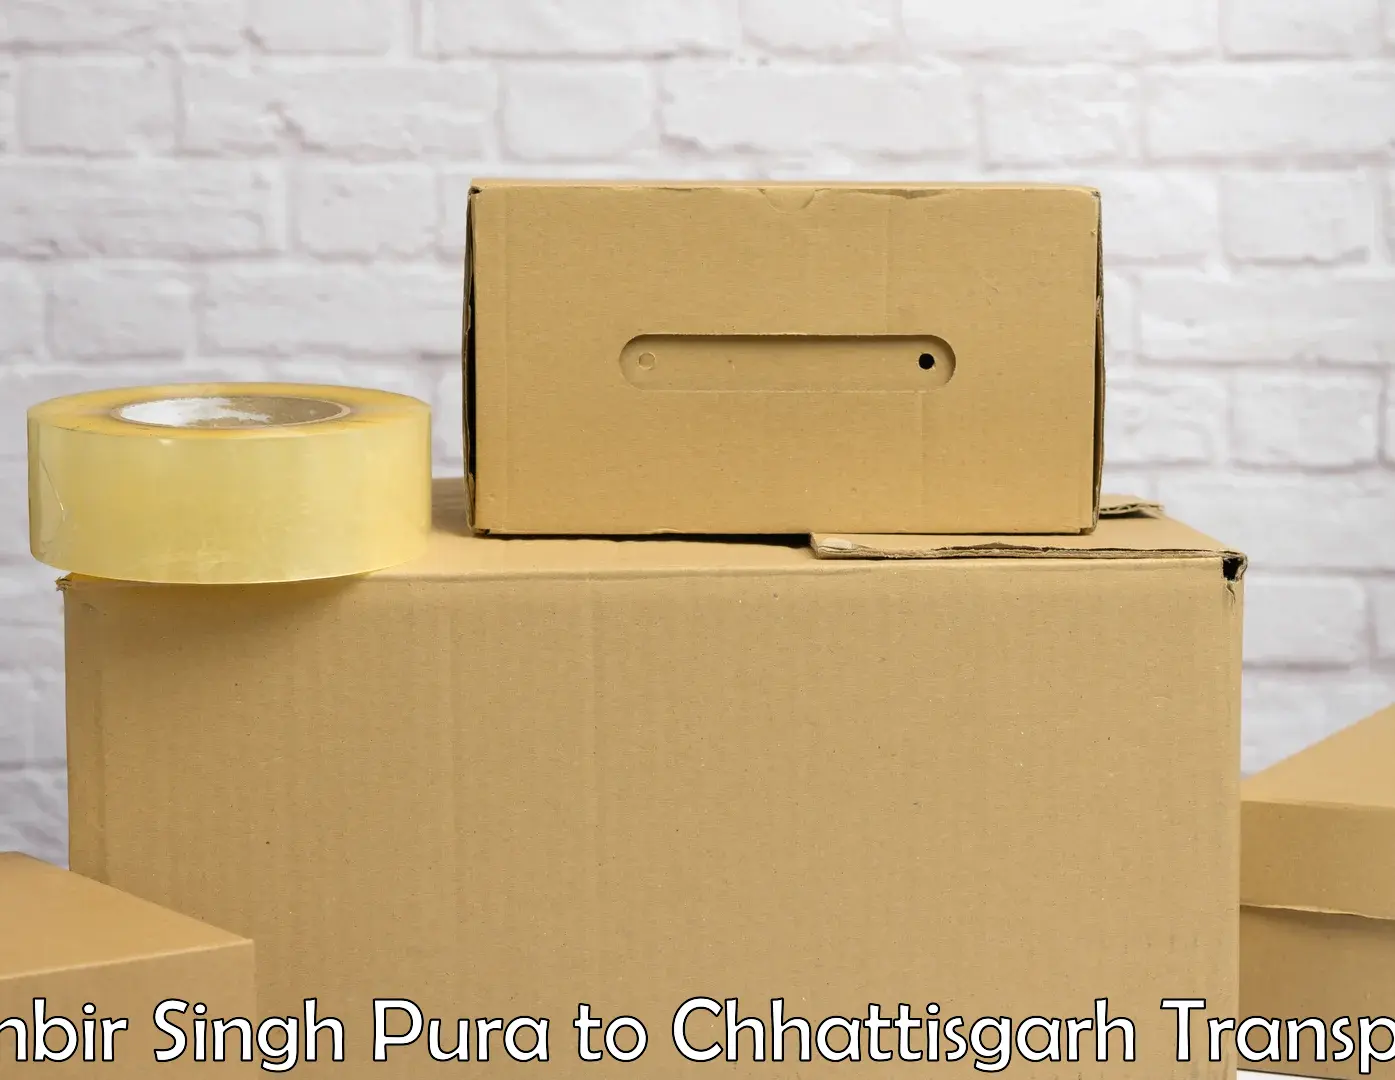 Commercial transport service Ranbir Singh Pura to Patna Chhattisgarh